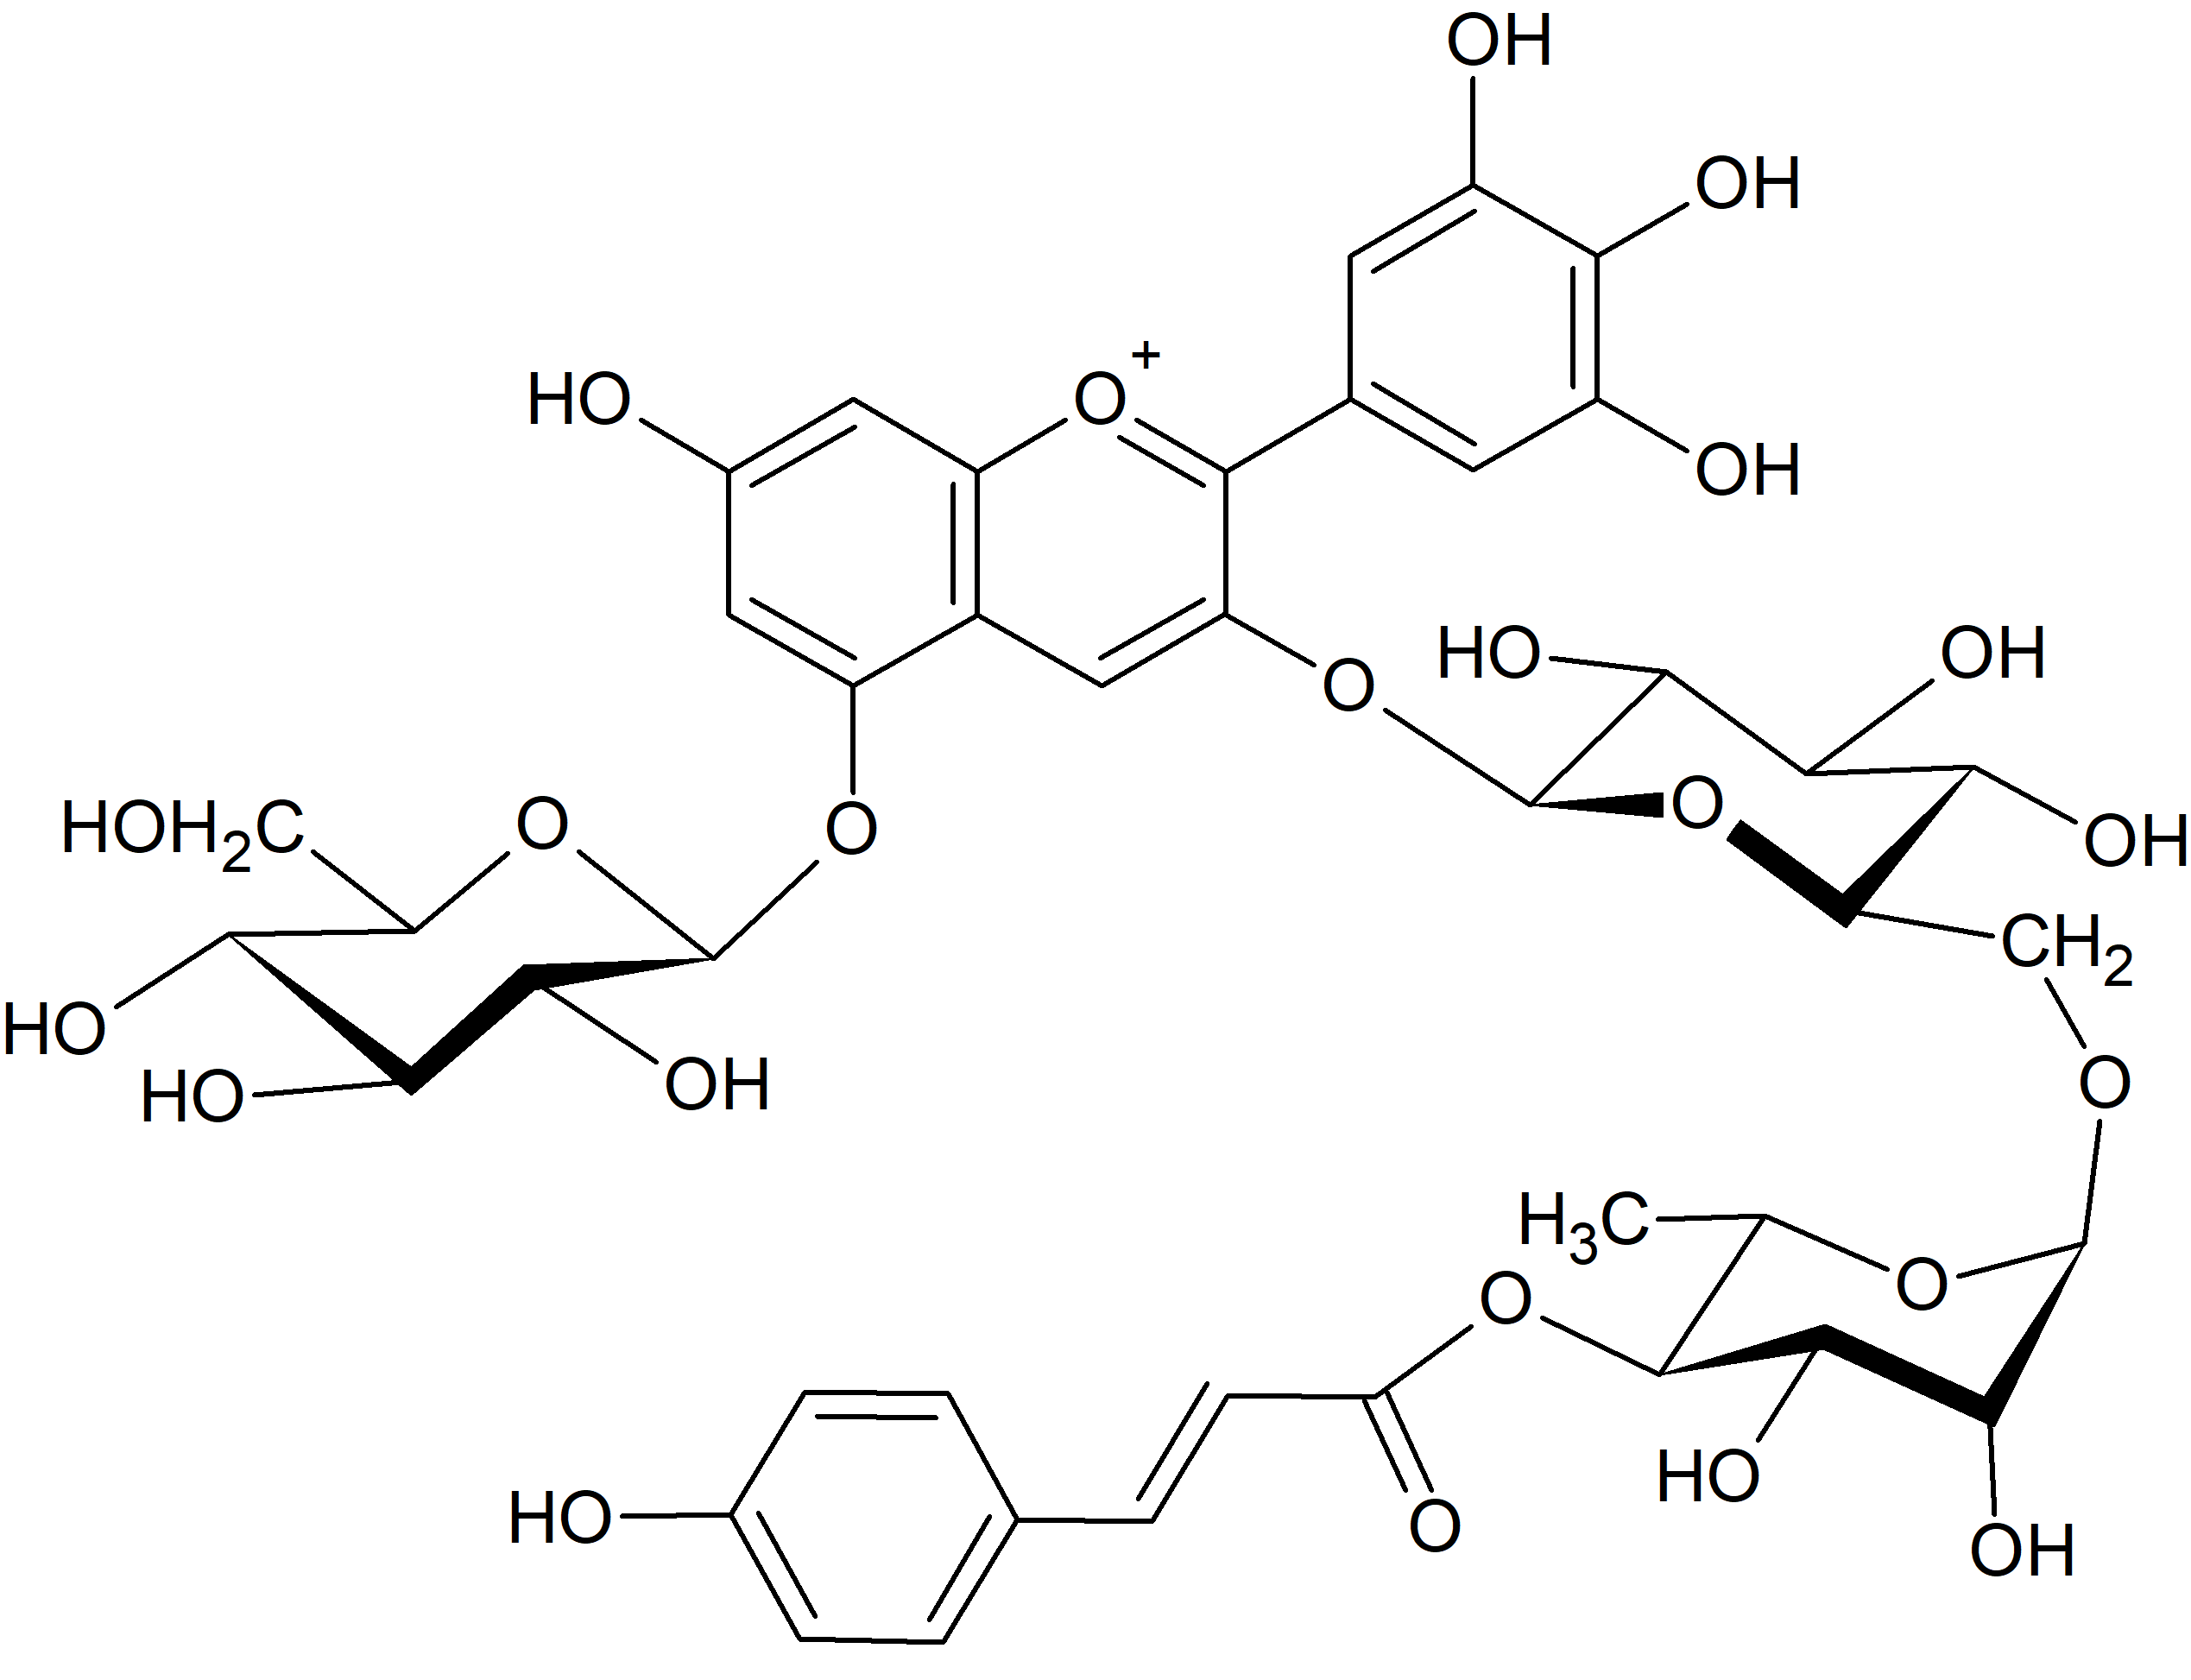 Delphinidin 3-O-(4'''-p-coumaroylrutinoside)-5-O-glucoside